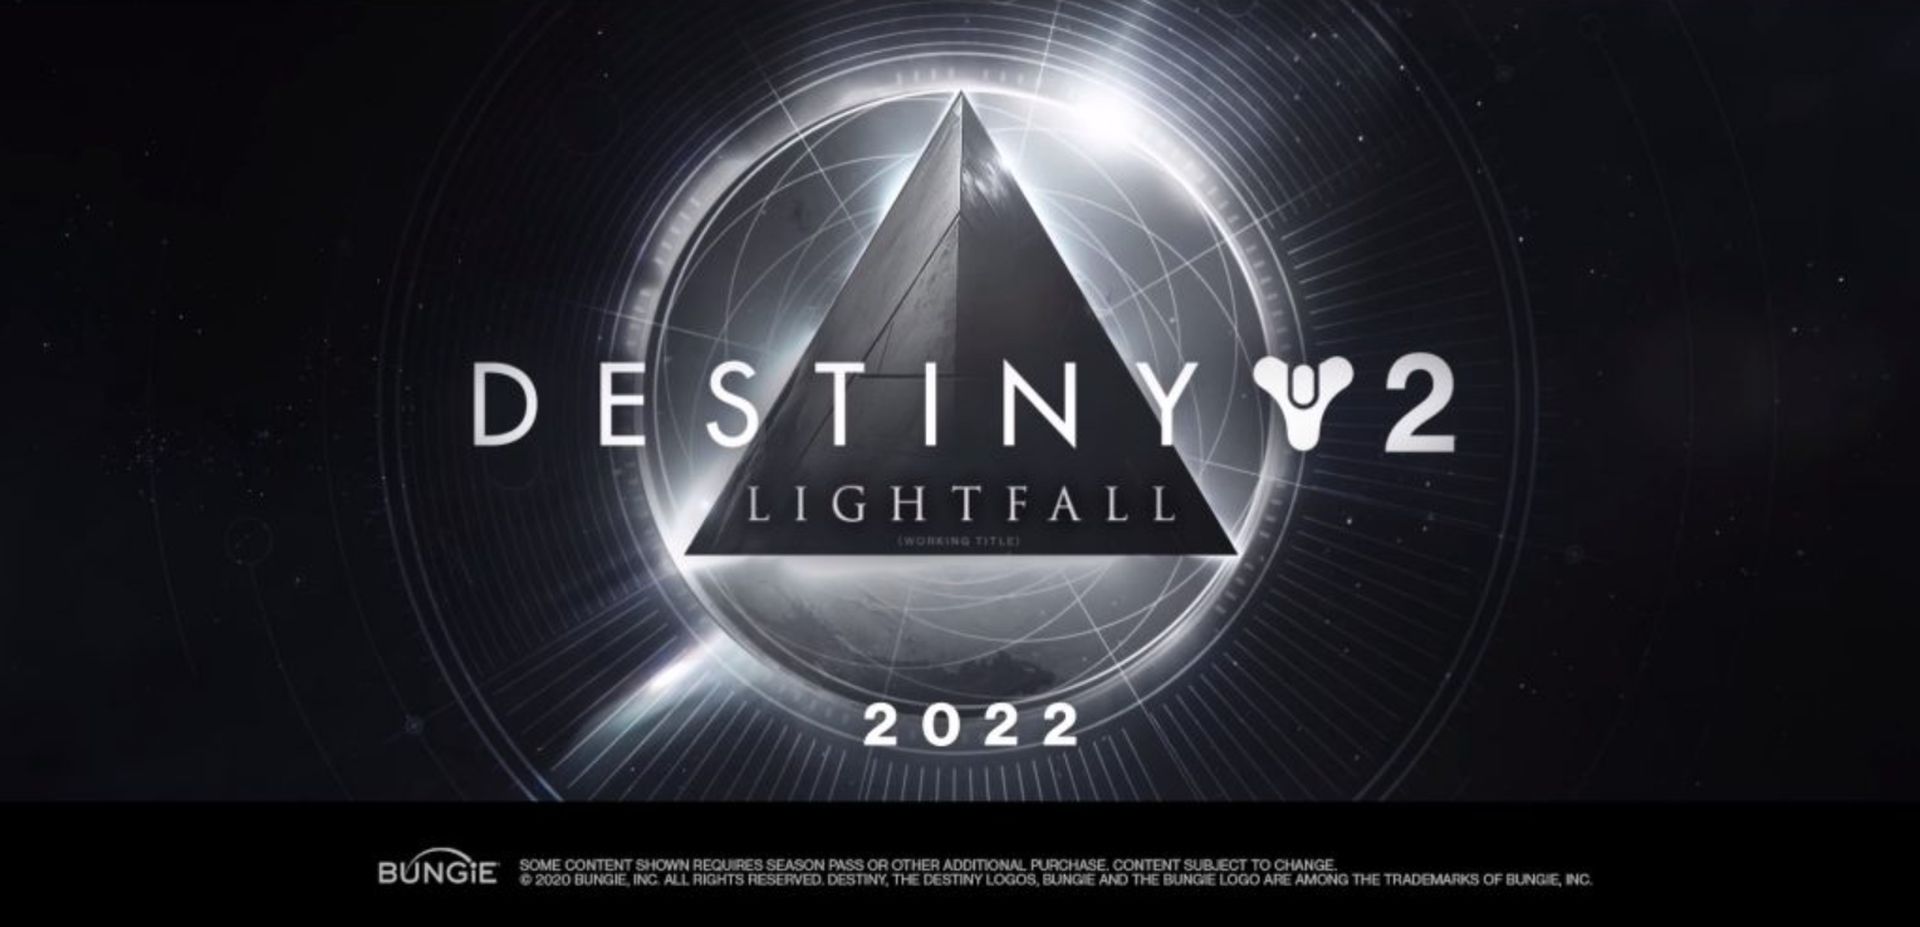 Destiny 2 Lightfall fragmanı ve çıkış tarihi: Lightfall DLC'sinin 2023'ün başlarında piyasaya sürülmesi bekleniyor.